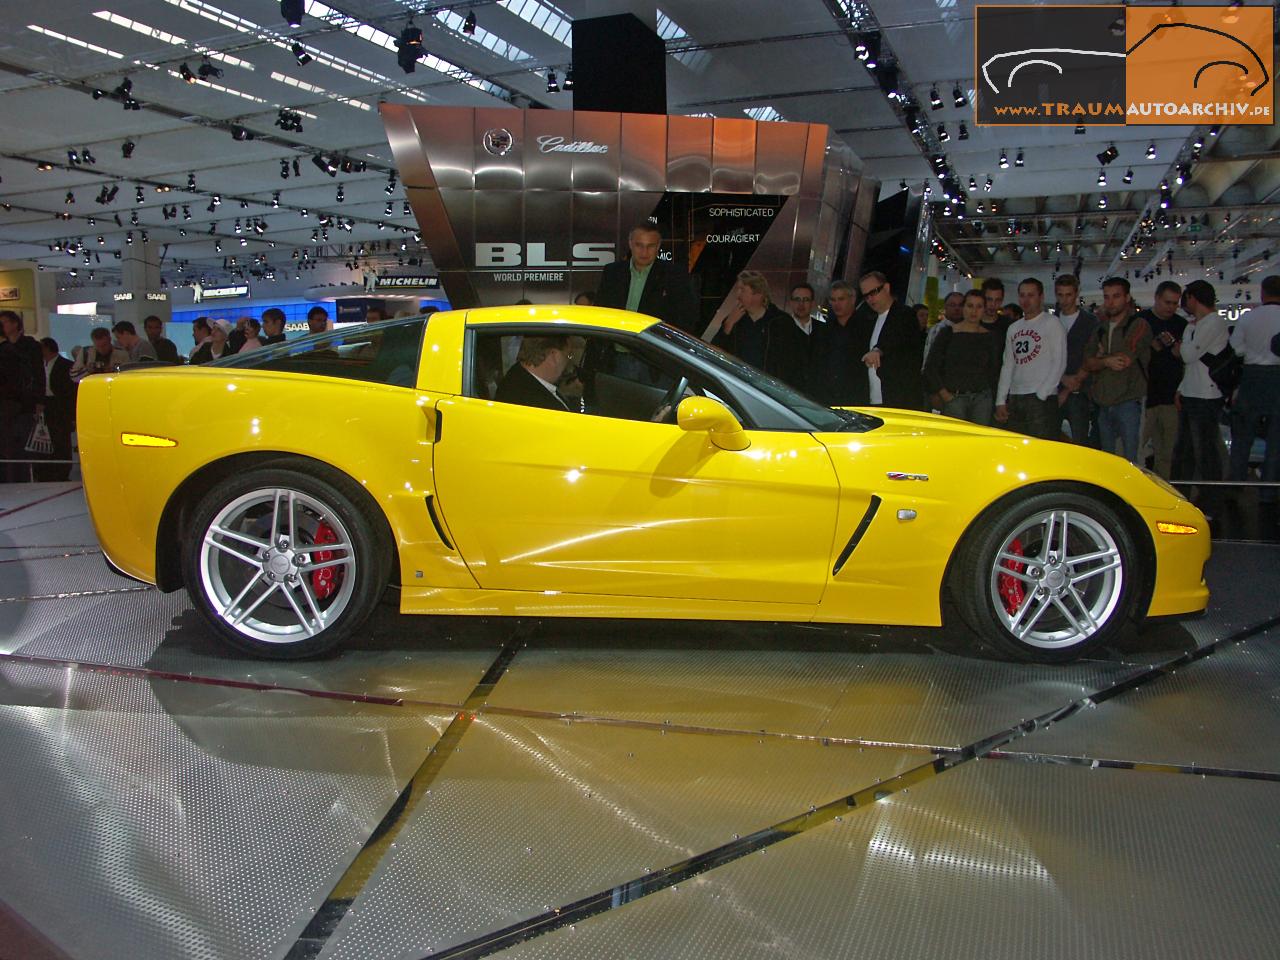 16 - Corvette Z06 '2005.jpg 195.3K